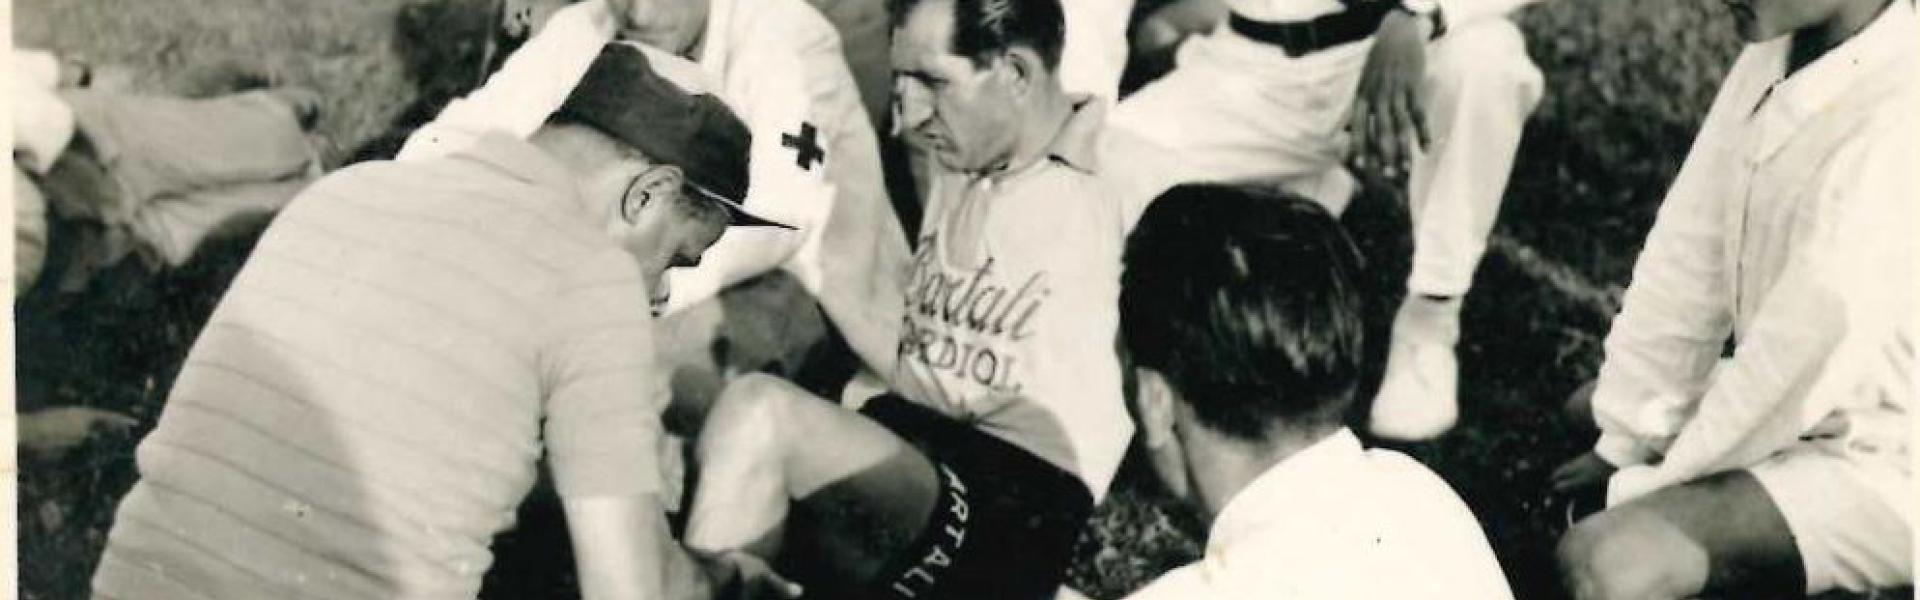 Immagine con al centro il ciclista Gino Bartoli mentre, a seguito di una caduta, veniva soccorso da alcuni medici. Attorno a lui alcune persone tra le quali il Vigile Urbano Sergio Ranchi in divisa bianca   